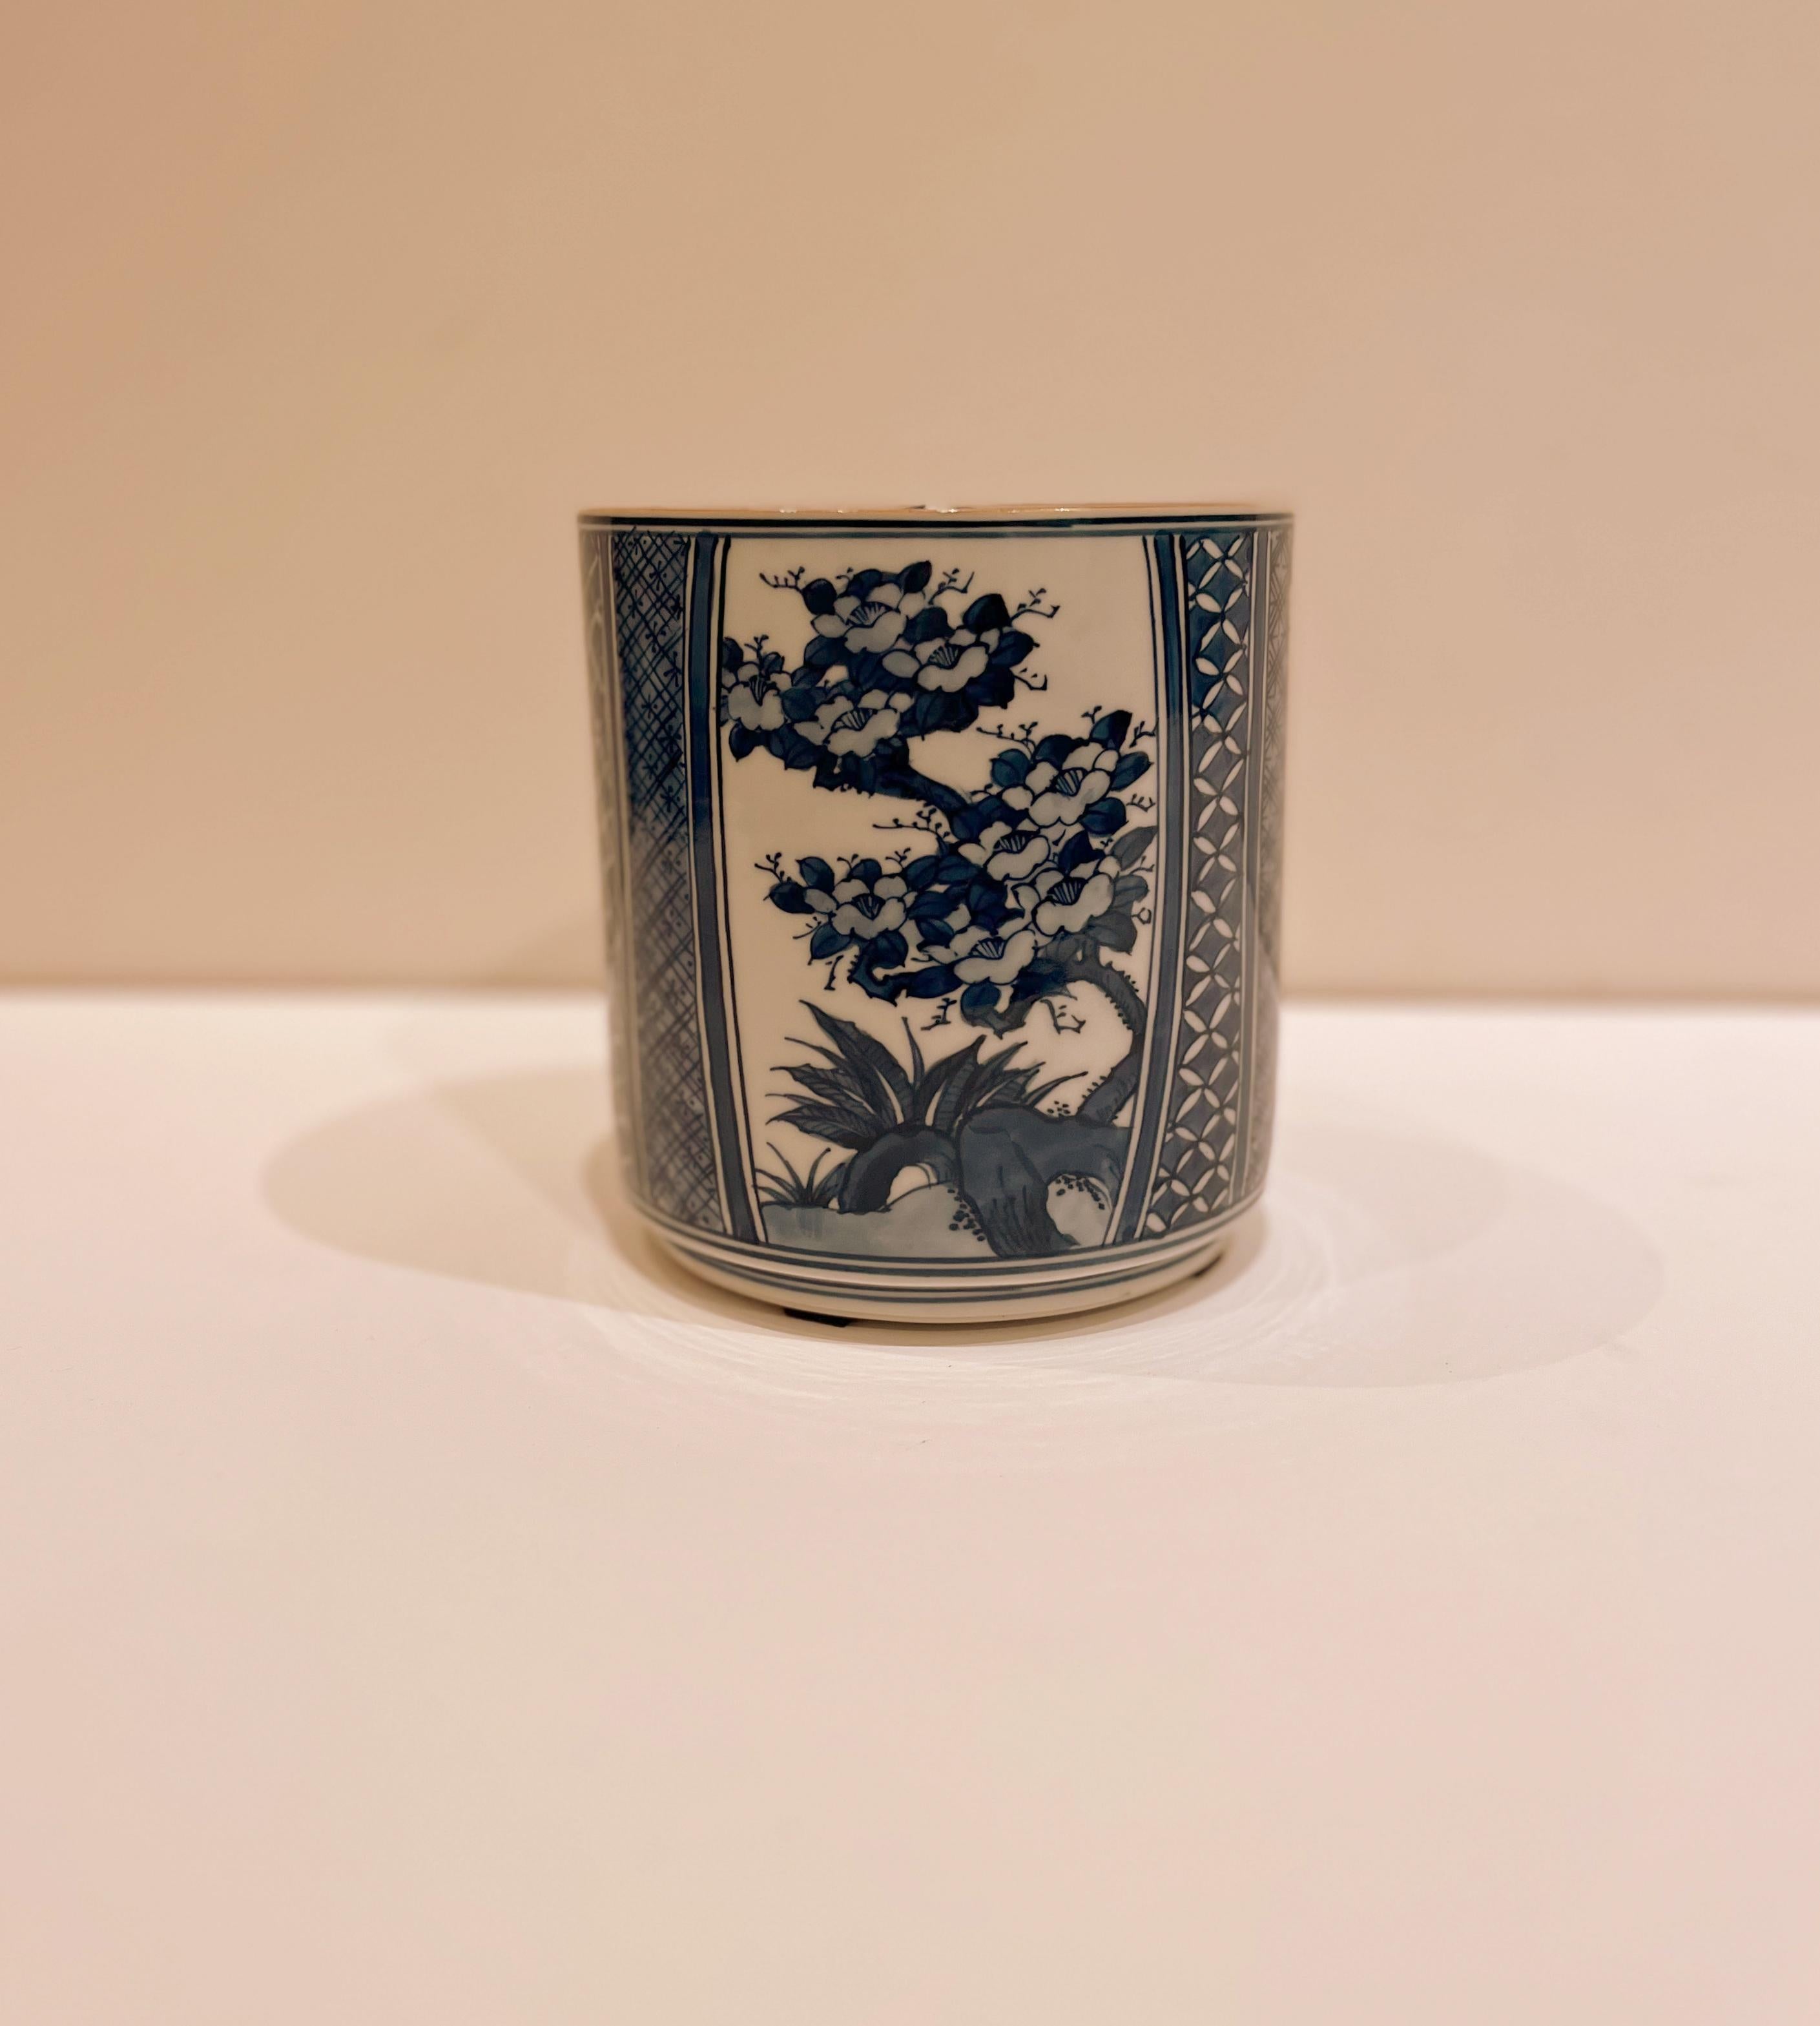 Ovale japanische Teedose aus blauem und weißem Porzellan mit Blumenmotiv auf Korpus und Deckel. Langlebigkeits-Motiv auf der Innenseite des Umschlags